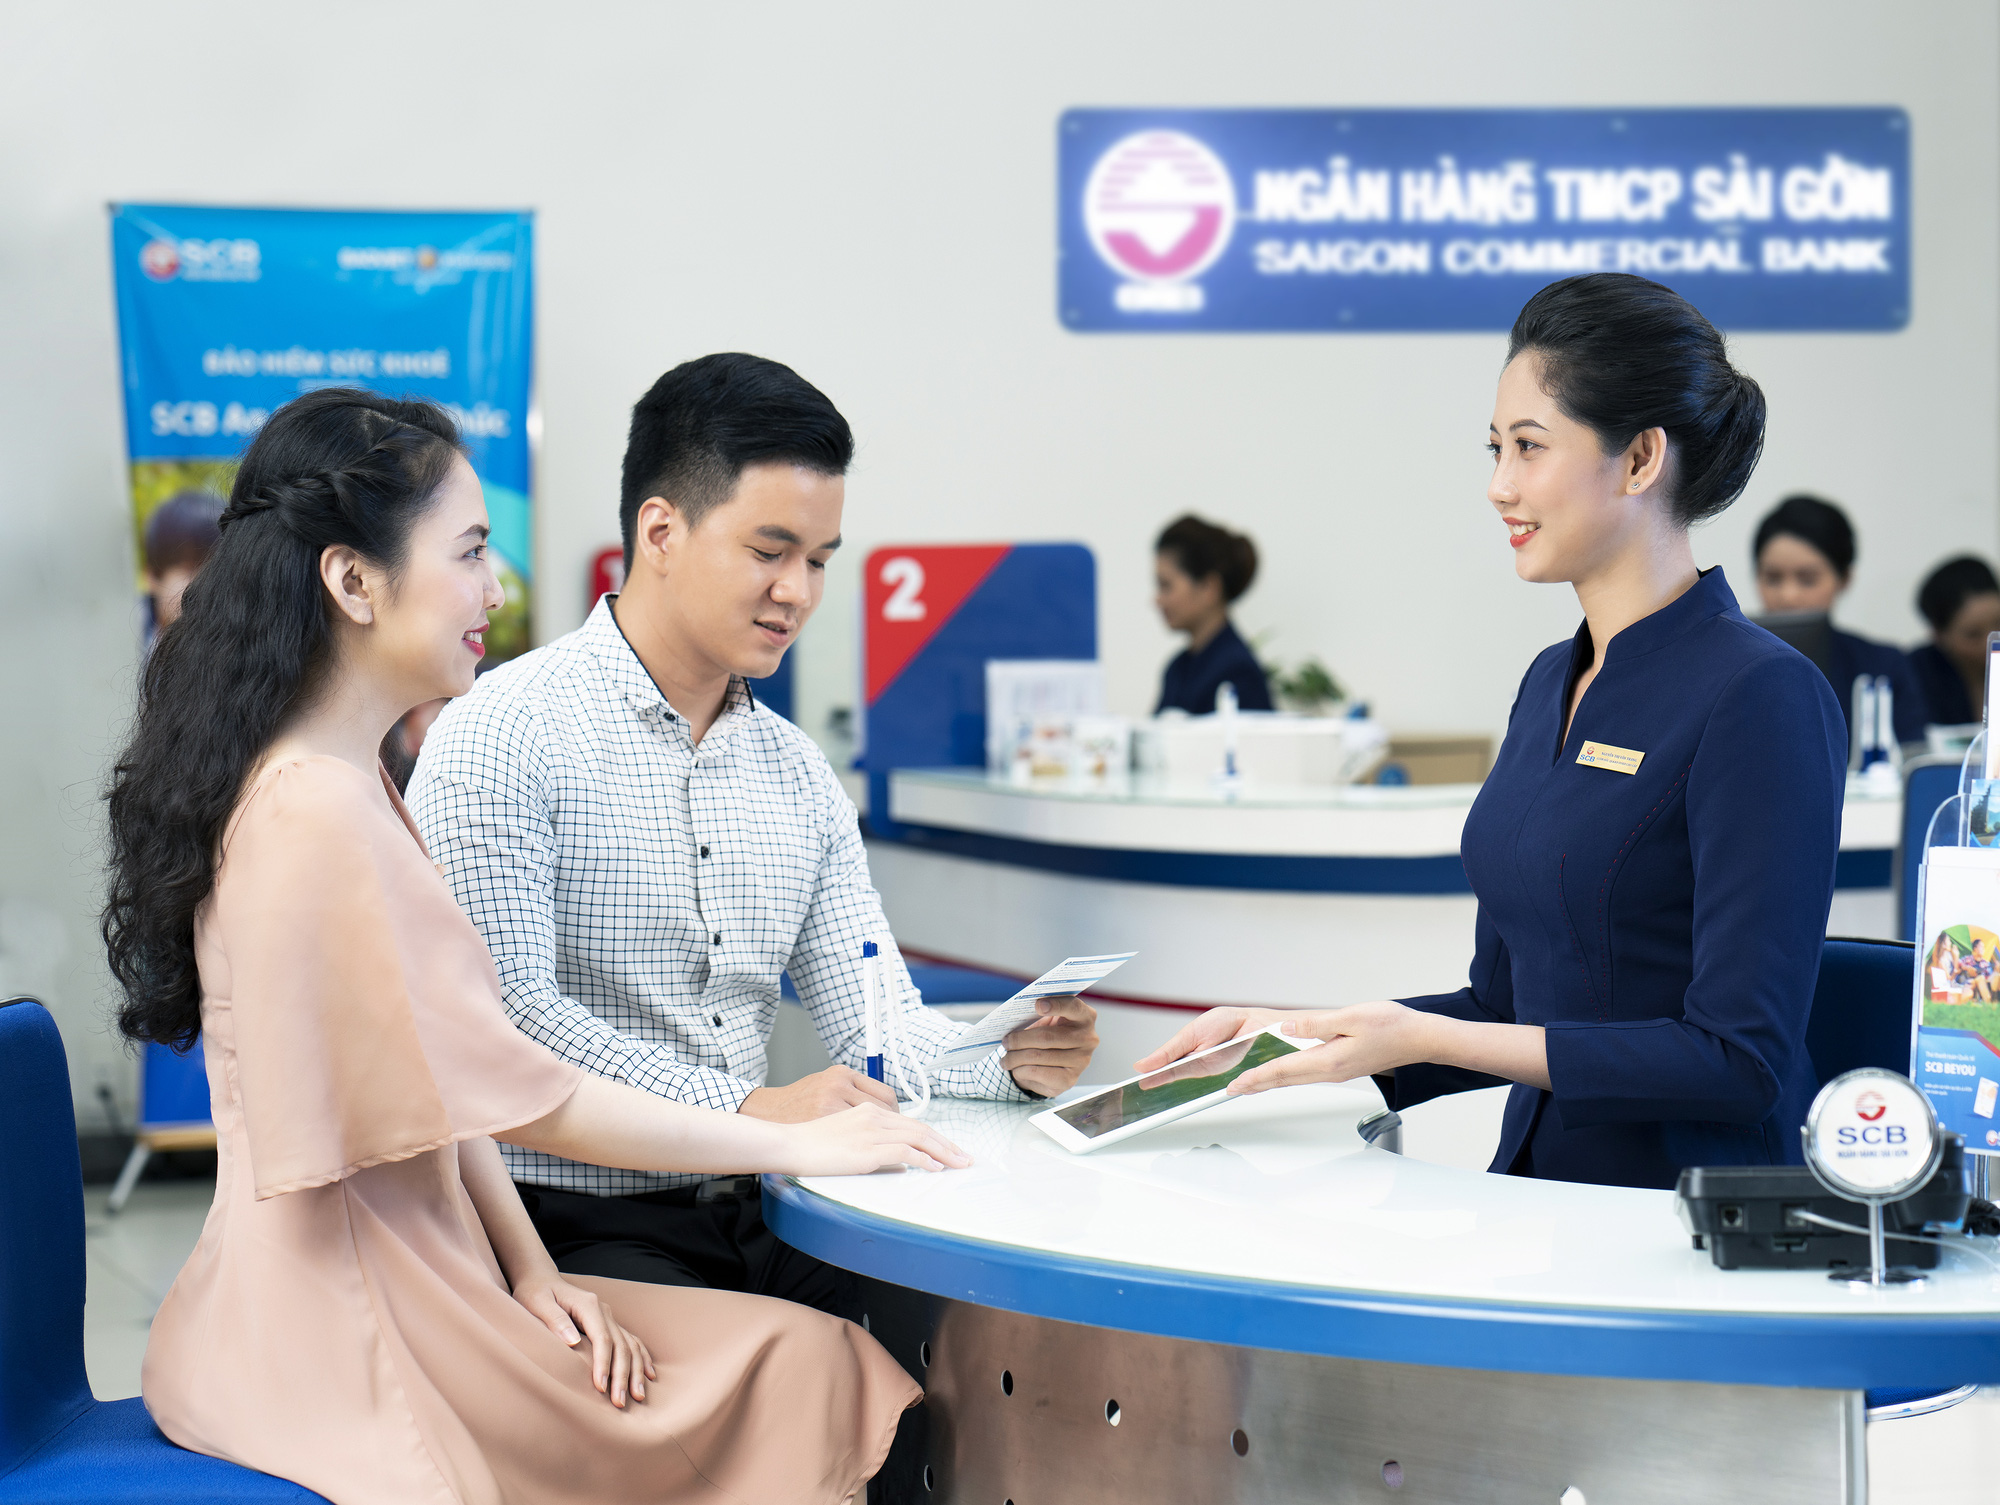 Tổng đài SCB, hotline ngân hàng Sài Gòn hỗ trợ khách hàng 24/7